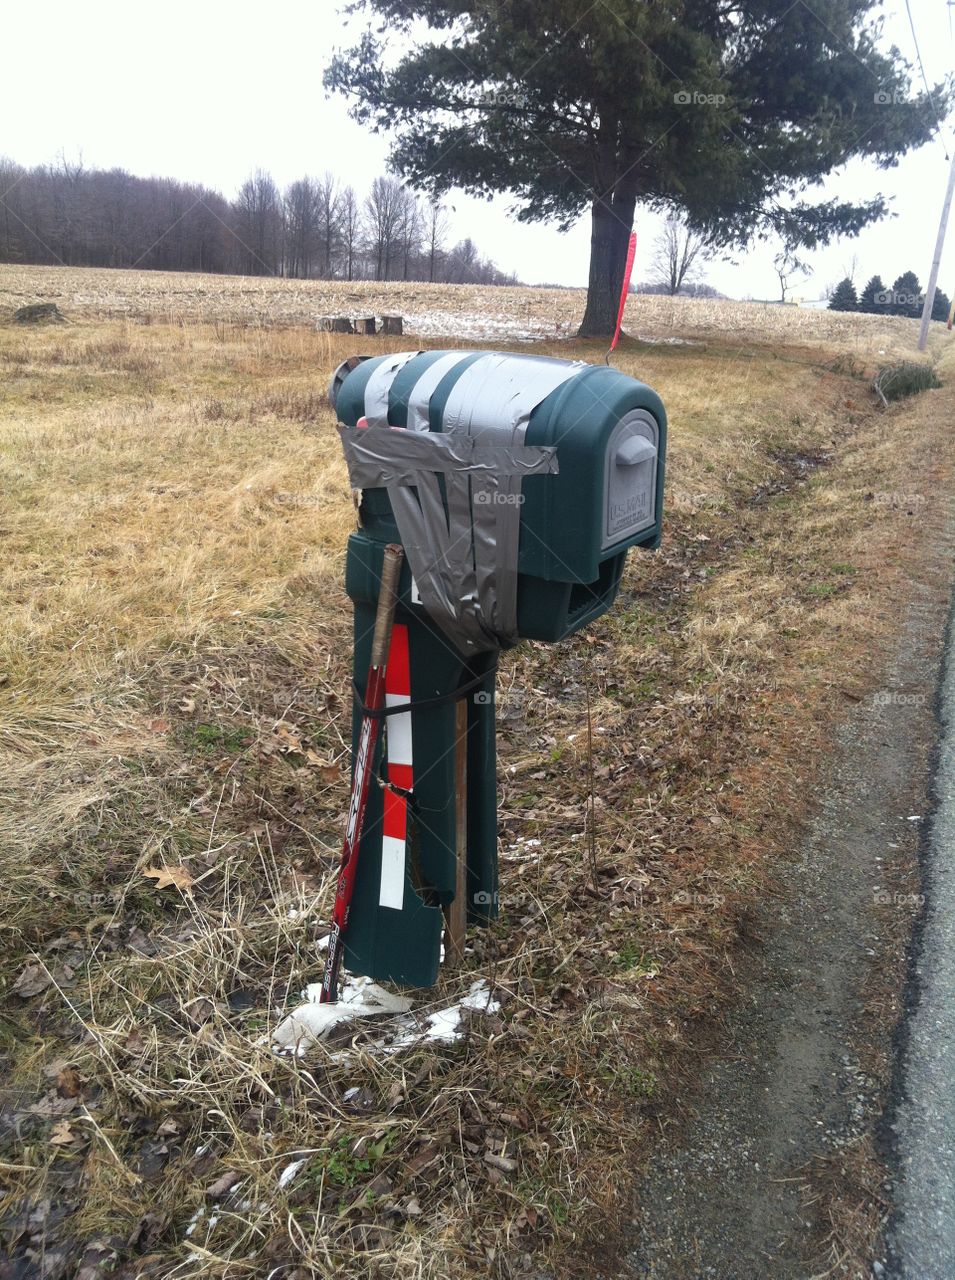 Broken mailbox